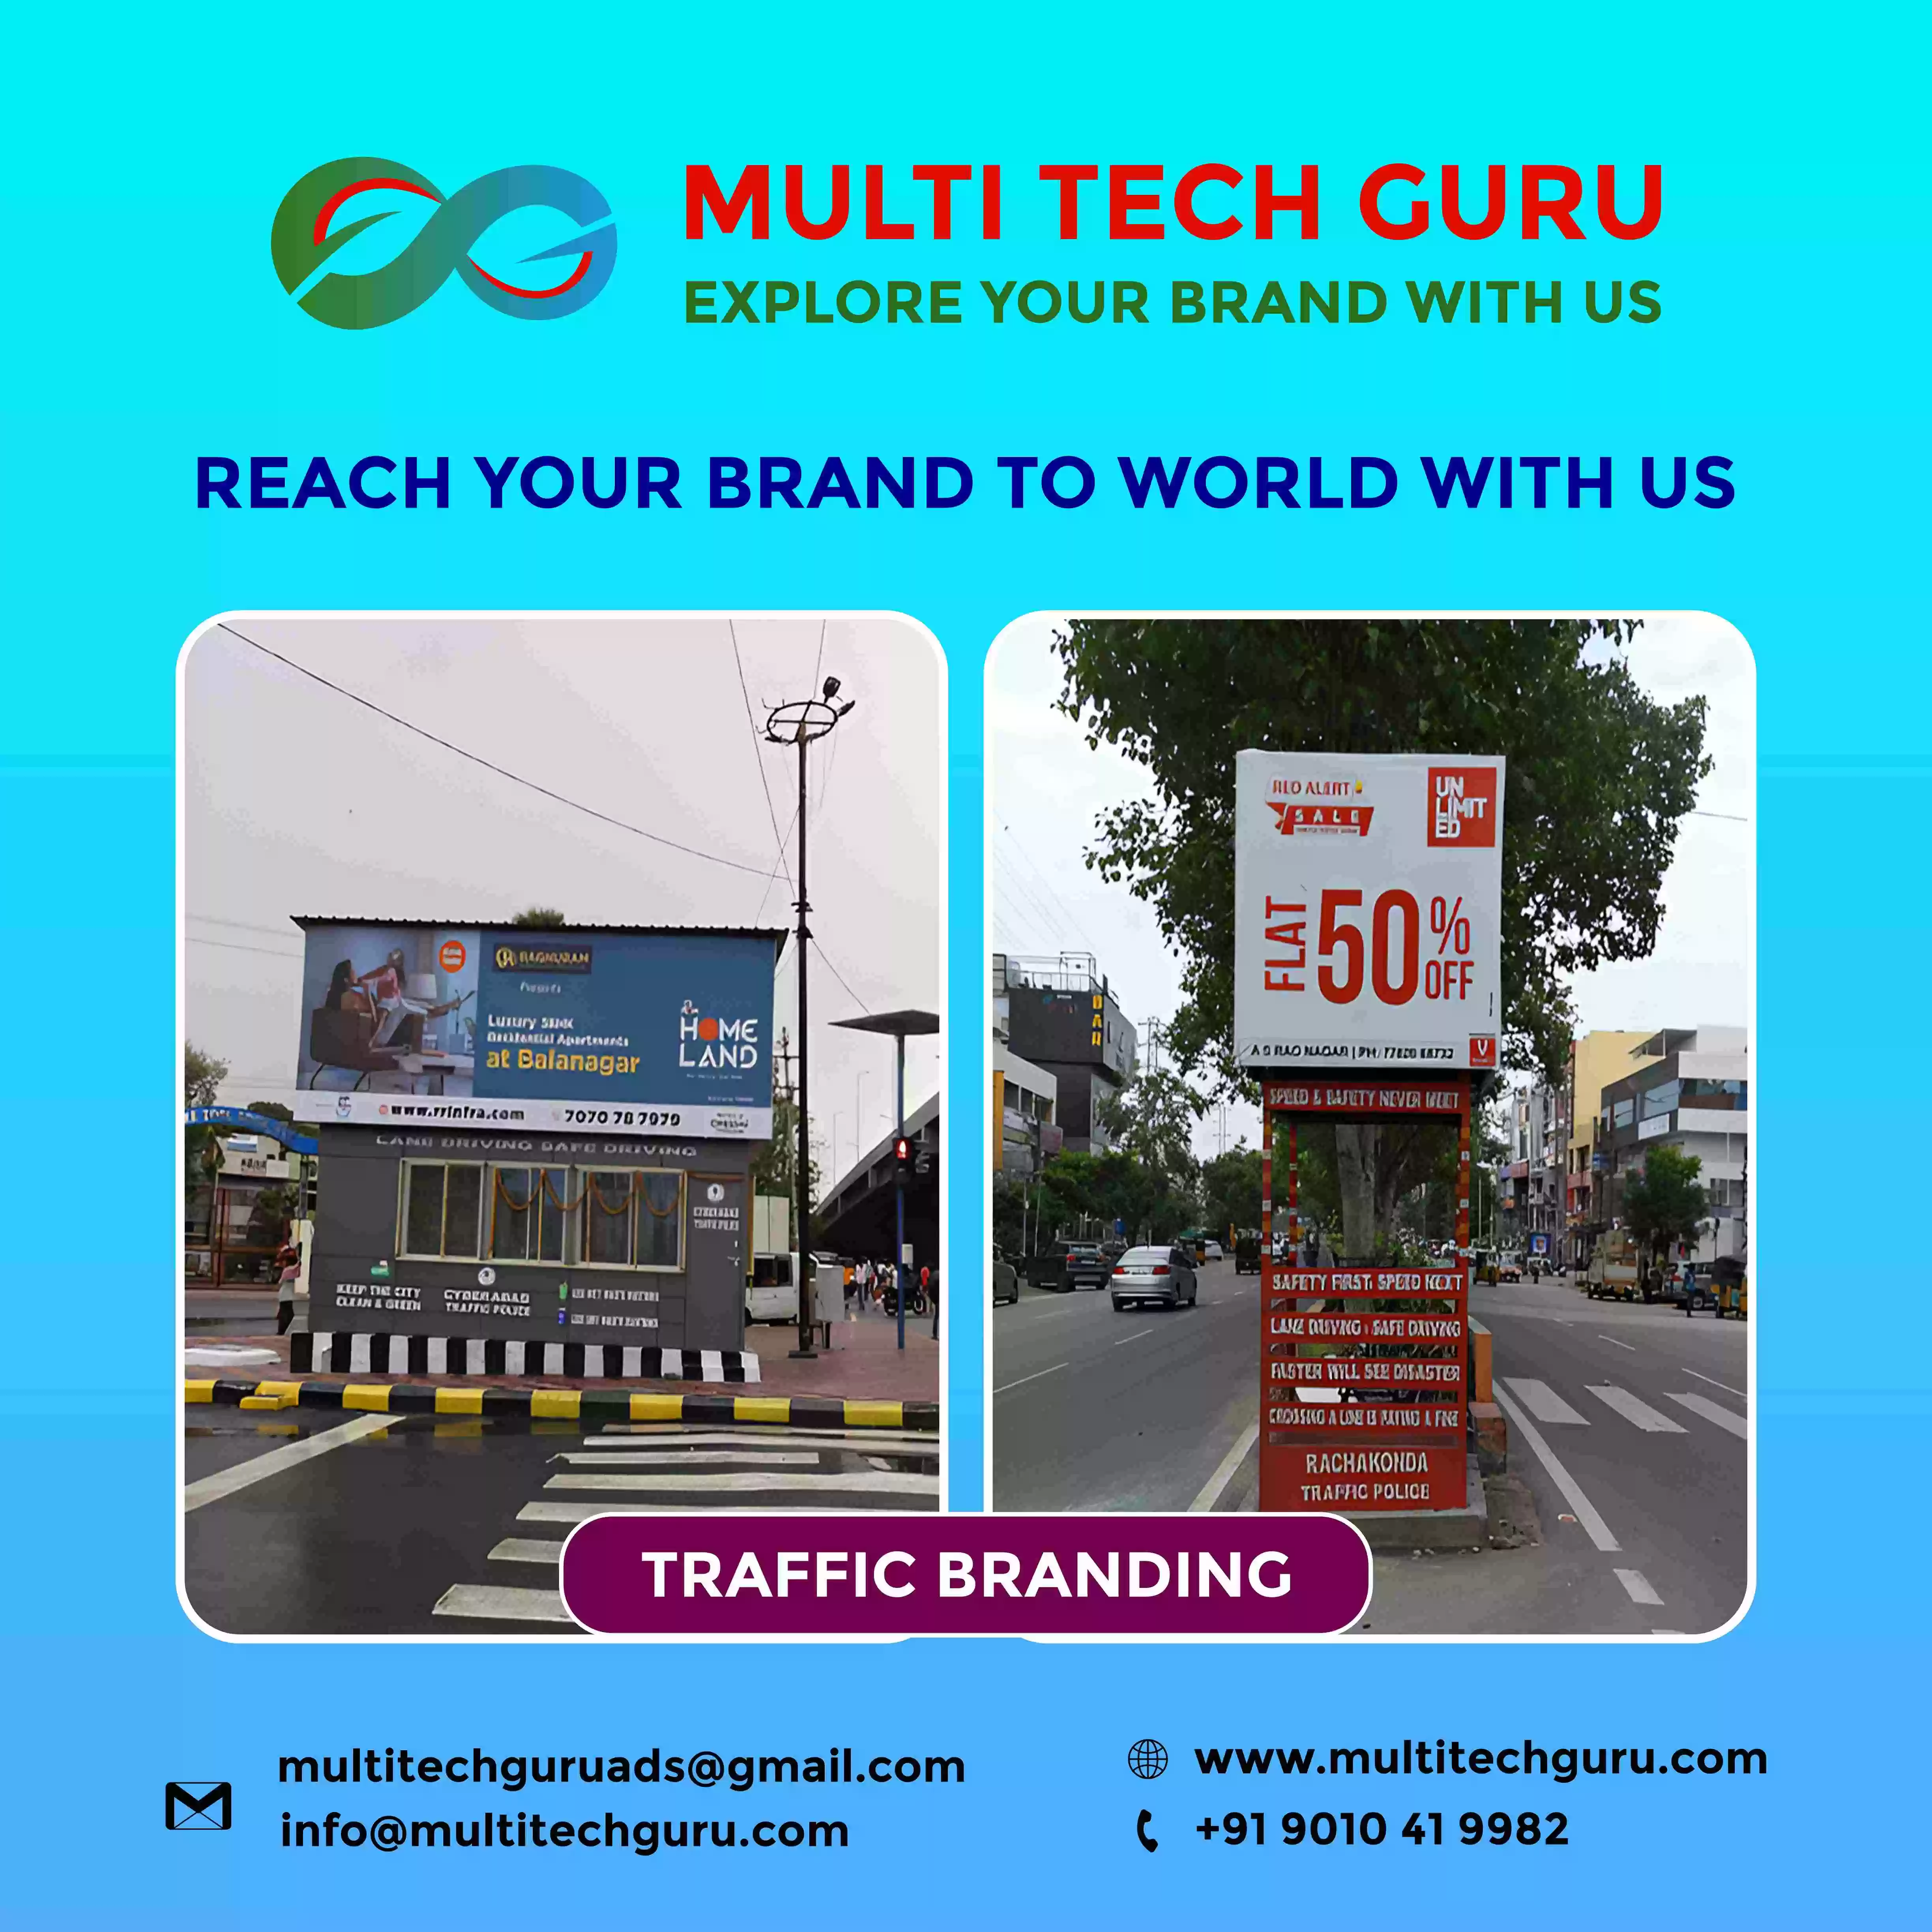 Traffic-Branding-advertising-marketing-Multitechguru.com-9010419982-Outdoor-media-advertising-Print-Media-Services.jpg